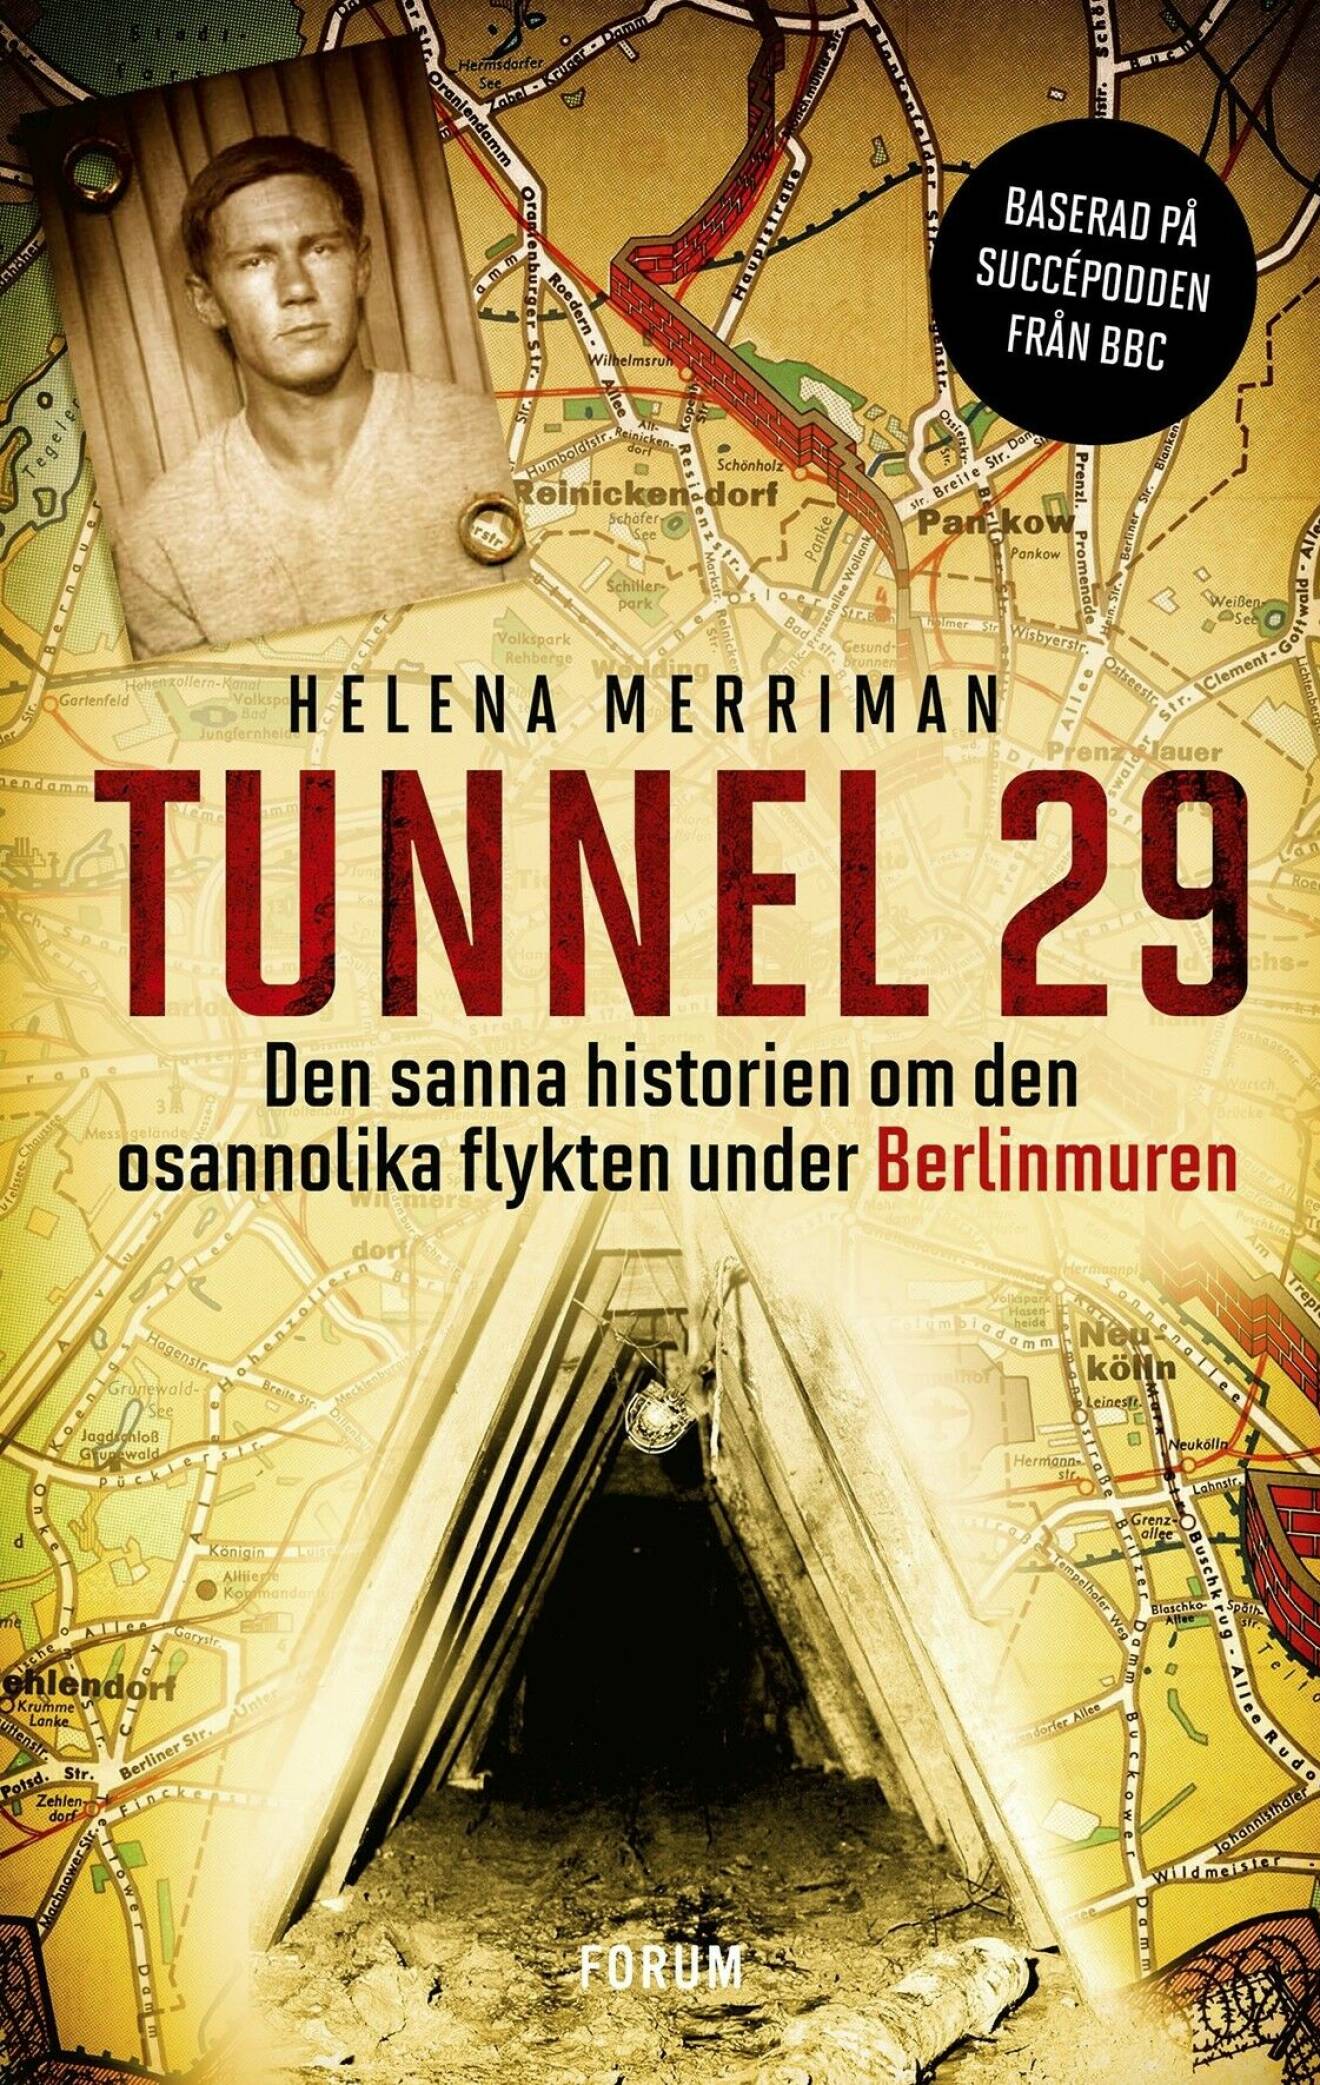 Bokomslaget till Tunnel 29